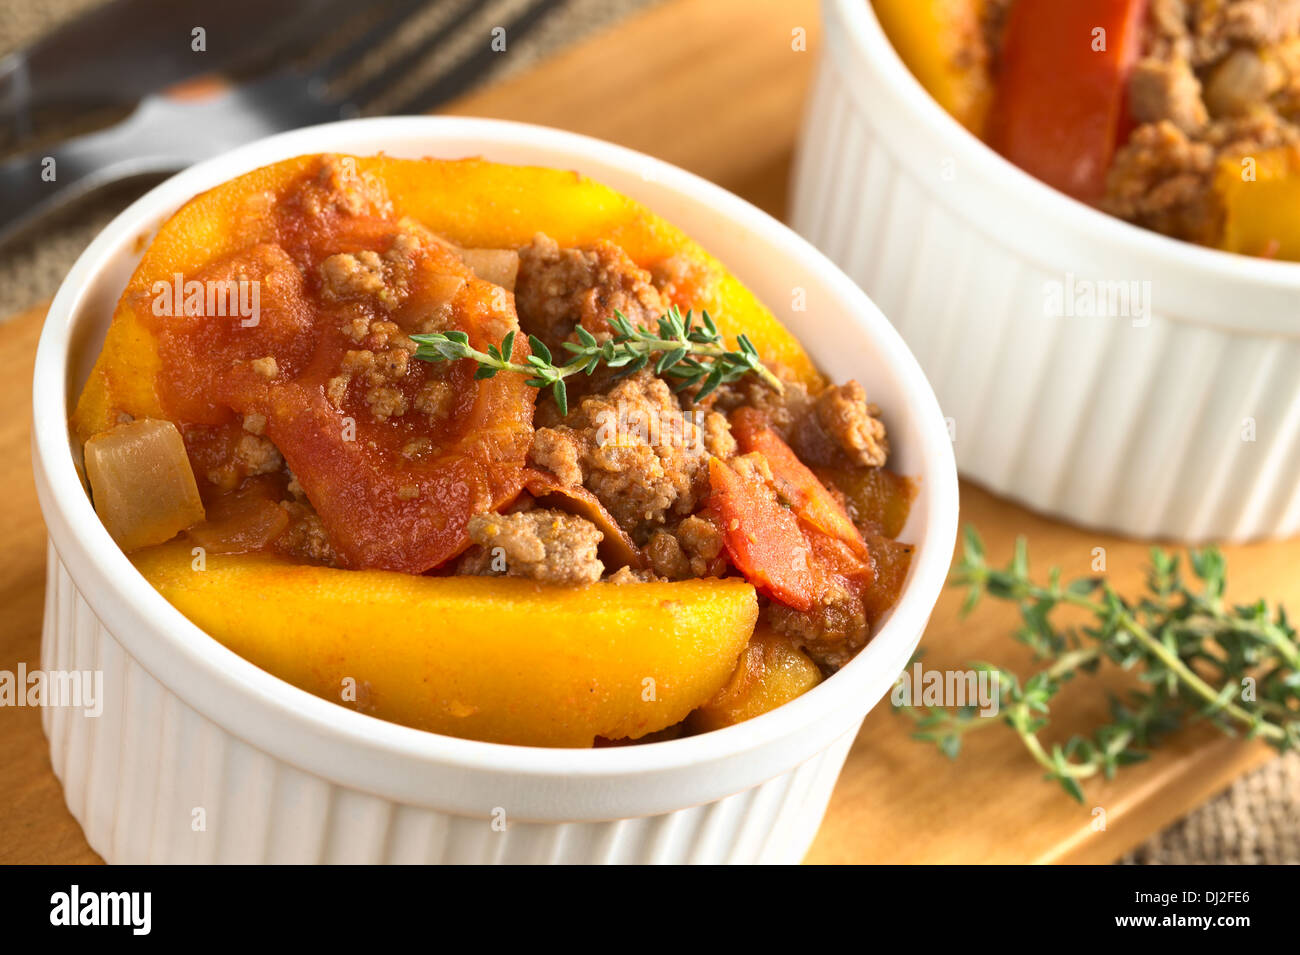 Zucca, pomodoro, macinato e il piatto con il timo fresco (messa a fuoco selettiva, Focus sul rametto di timo in recipiente) Foto Stock